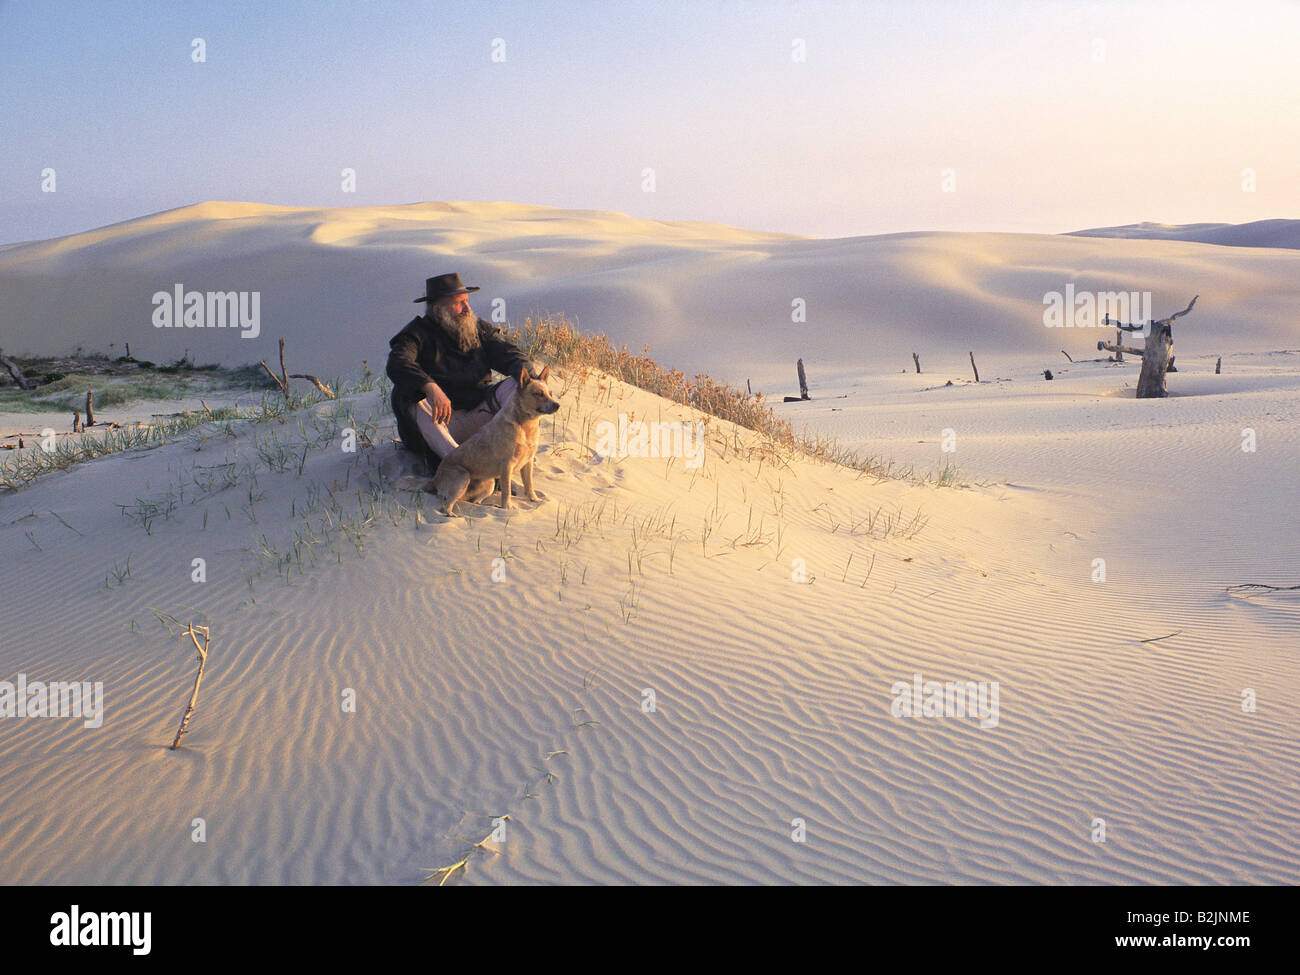 Australia. Outback. Un vecchio uomo con barba grigia seduto con il suo cane sulle dune di sabbia del deserto. Foto Stock